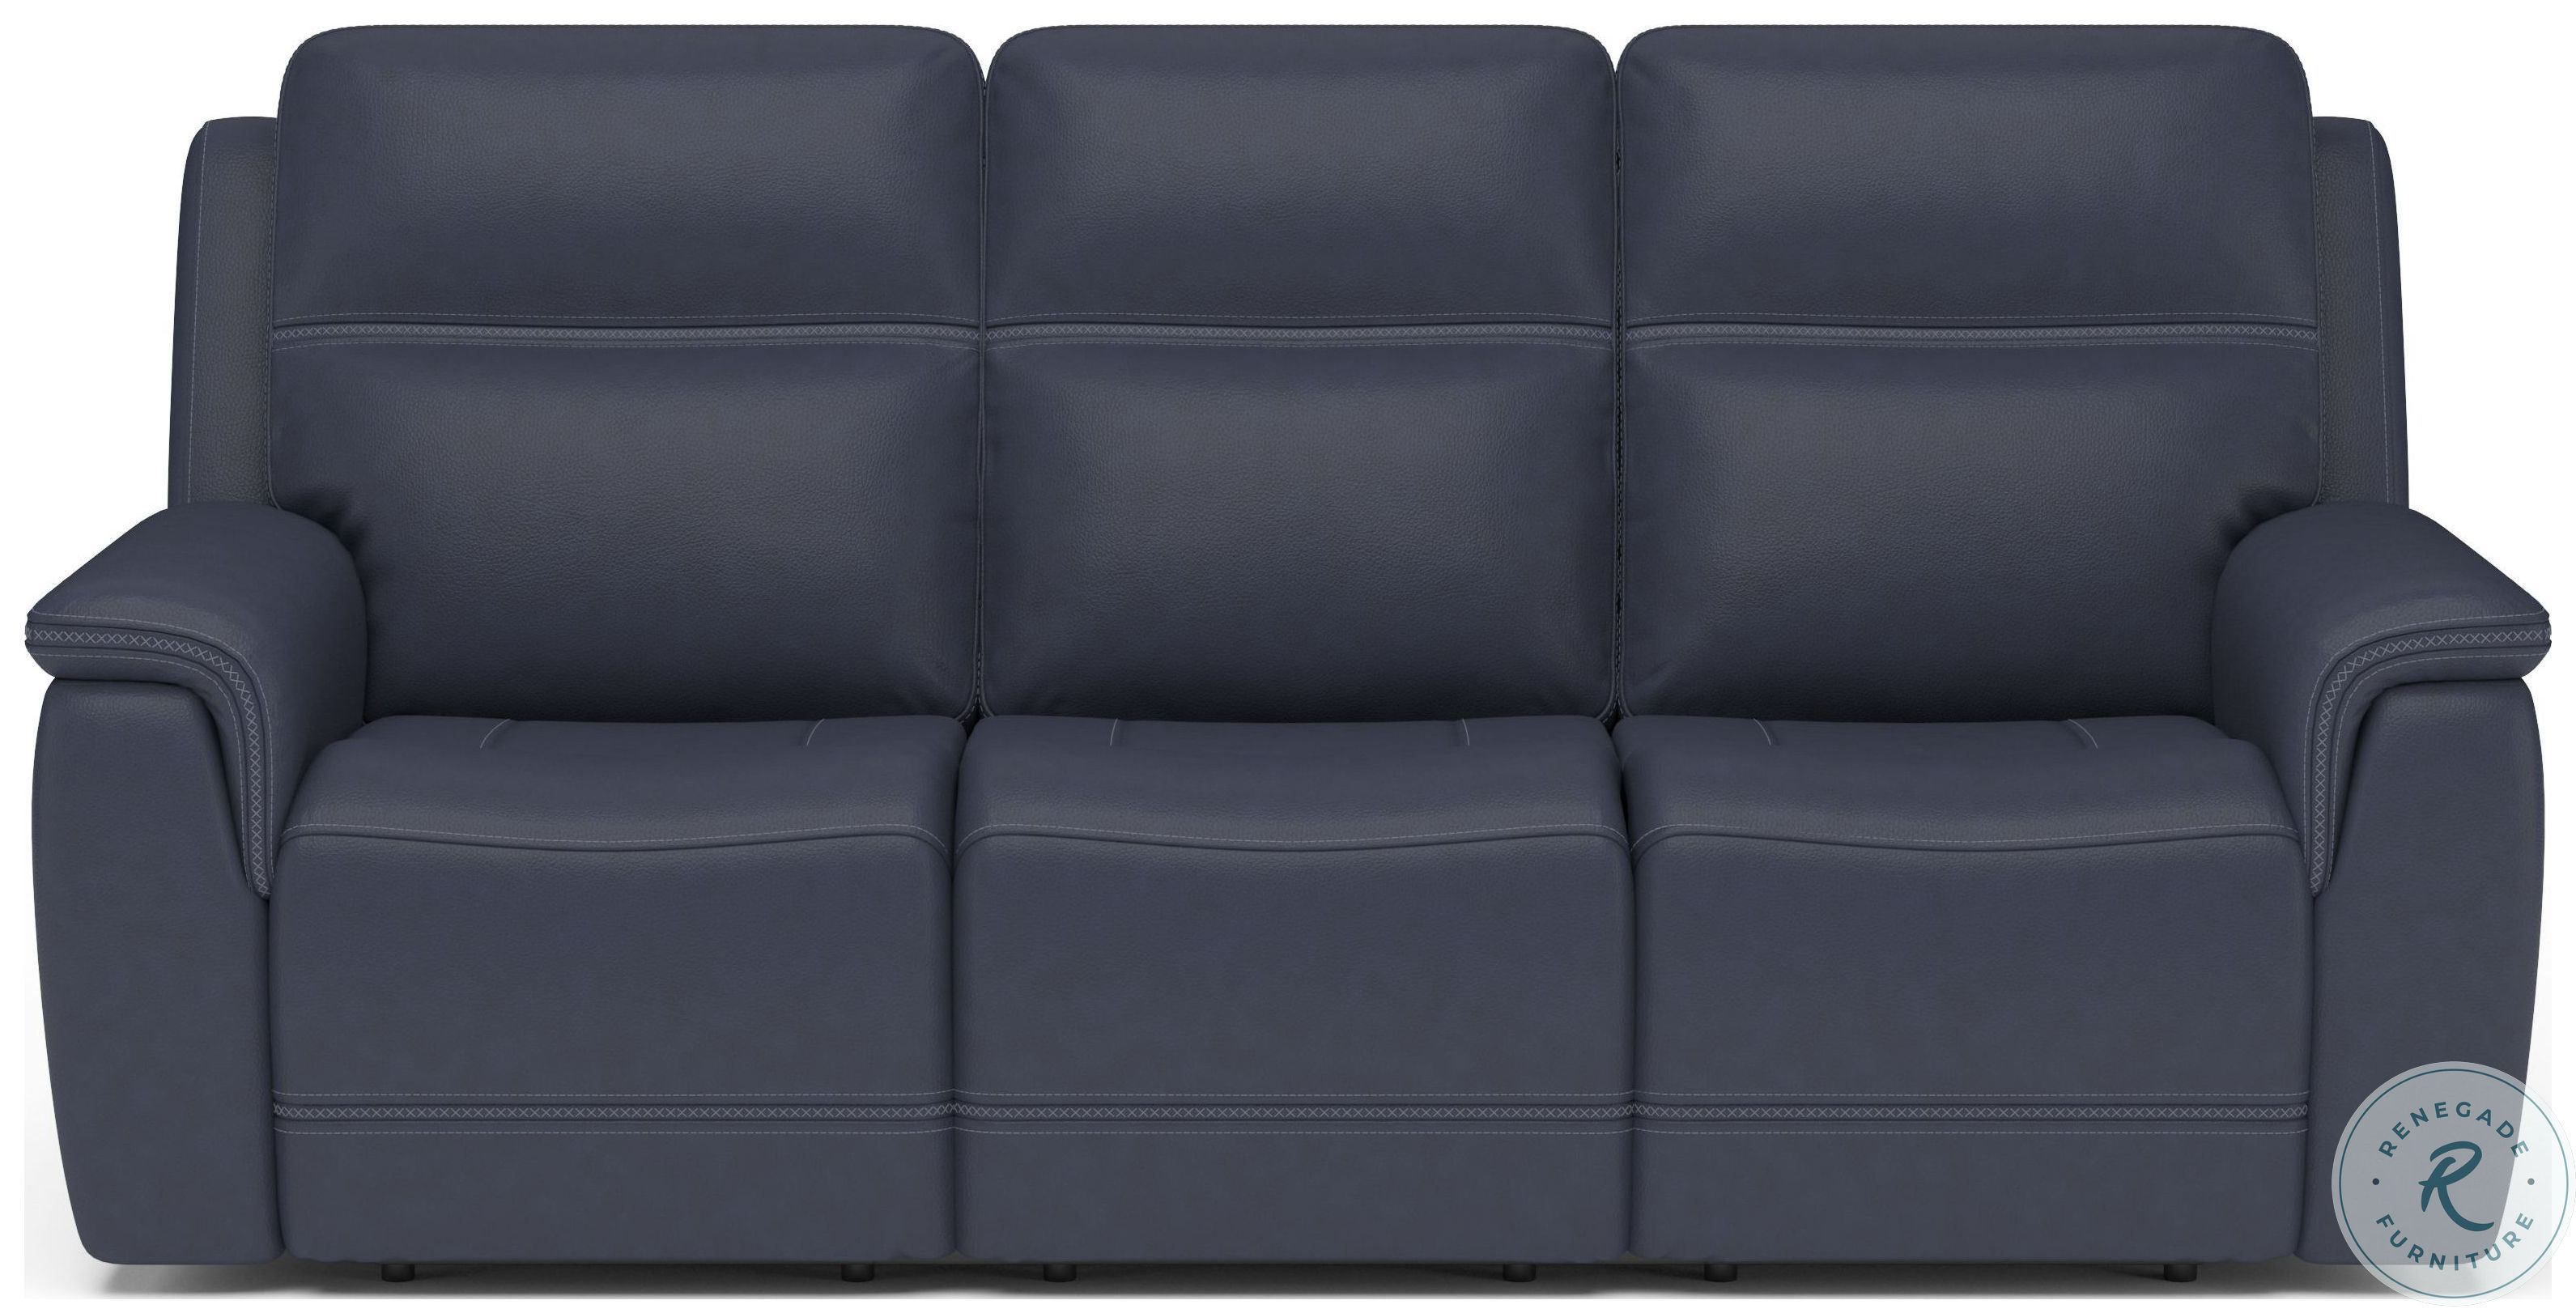 sawyer leather power reclining sofa warranty